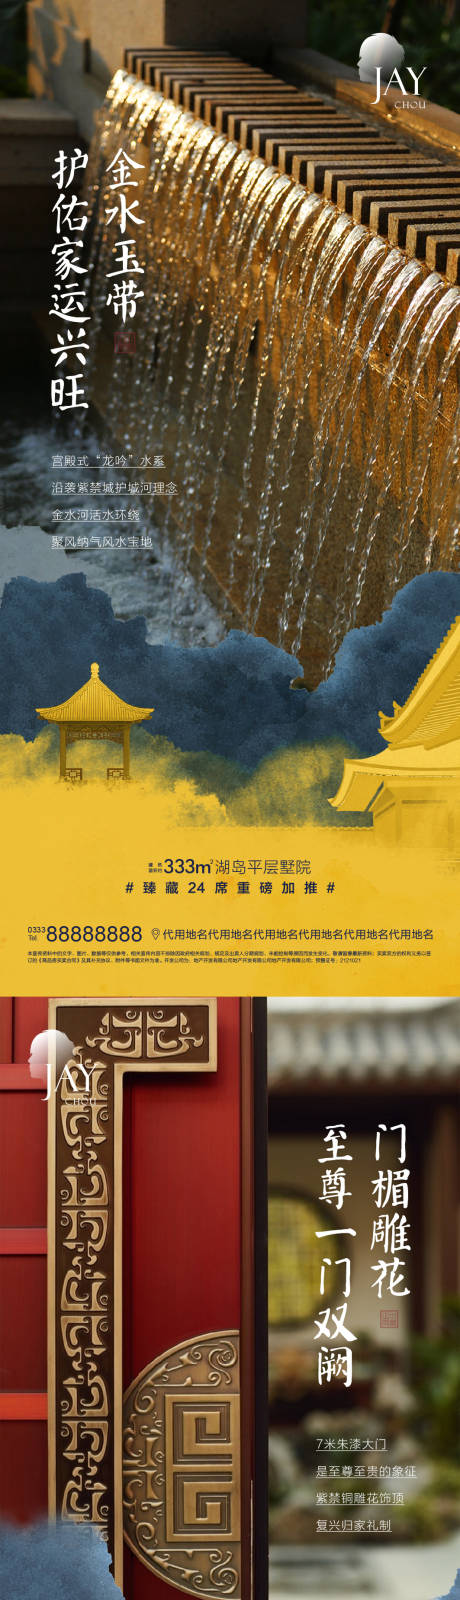 中式景观加推系列海报